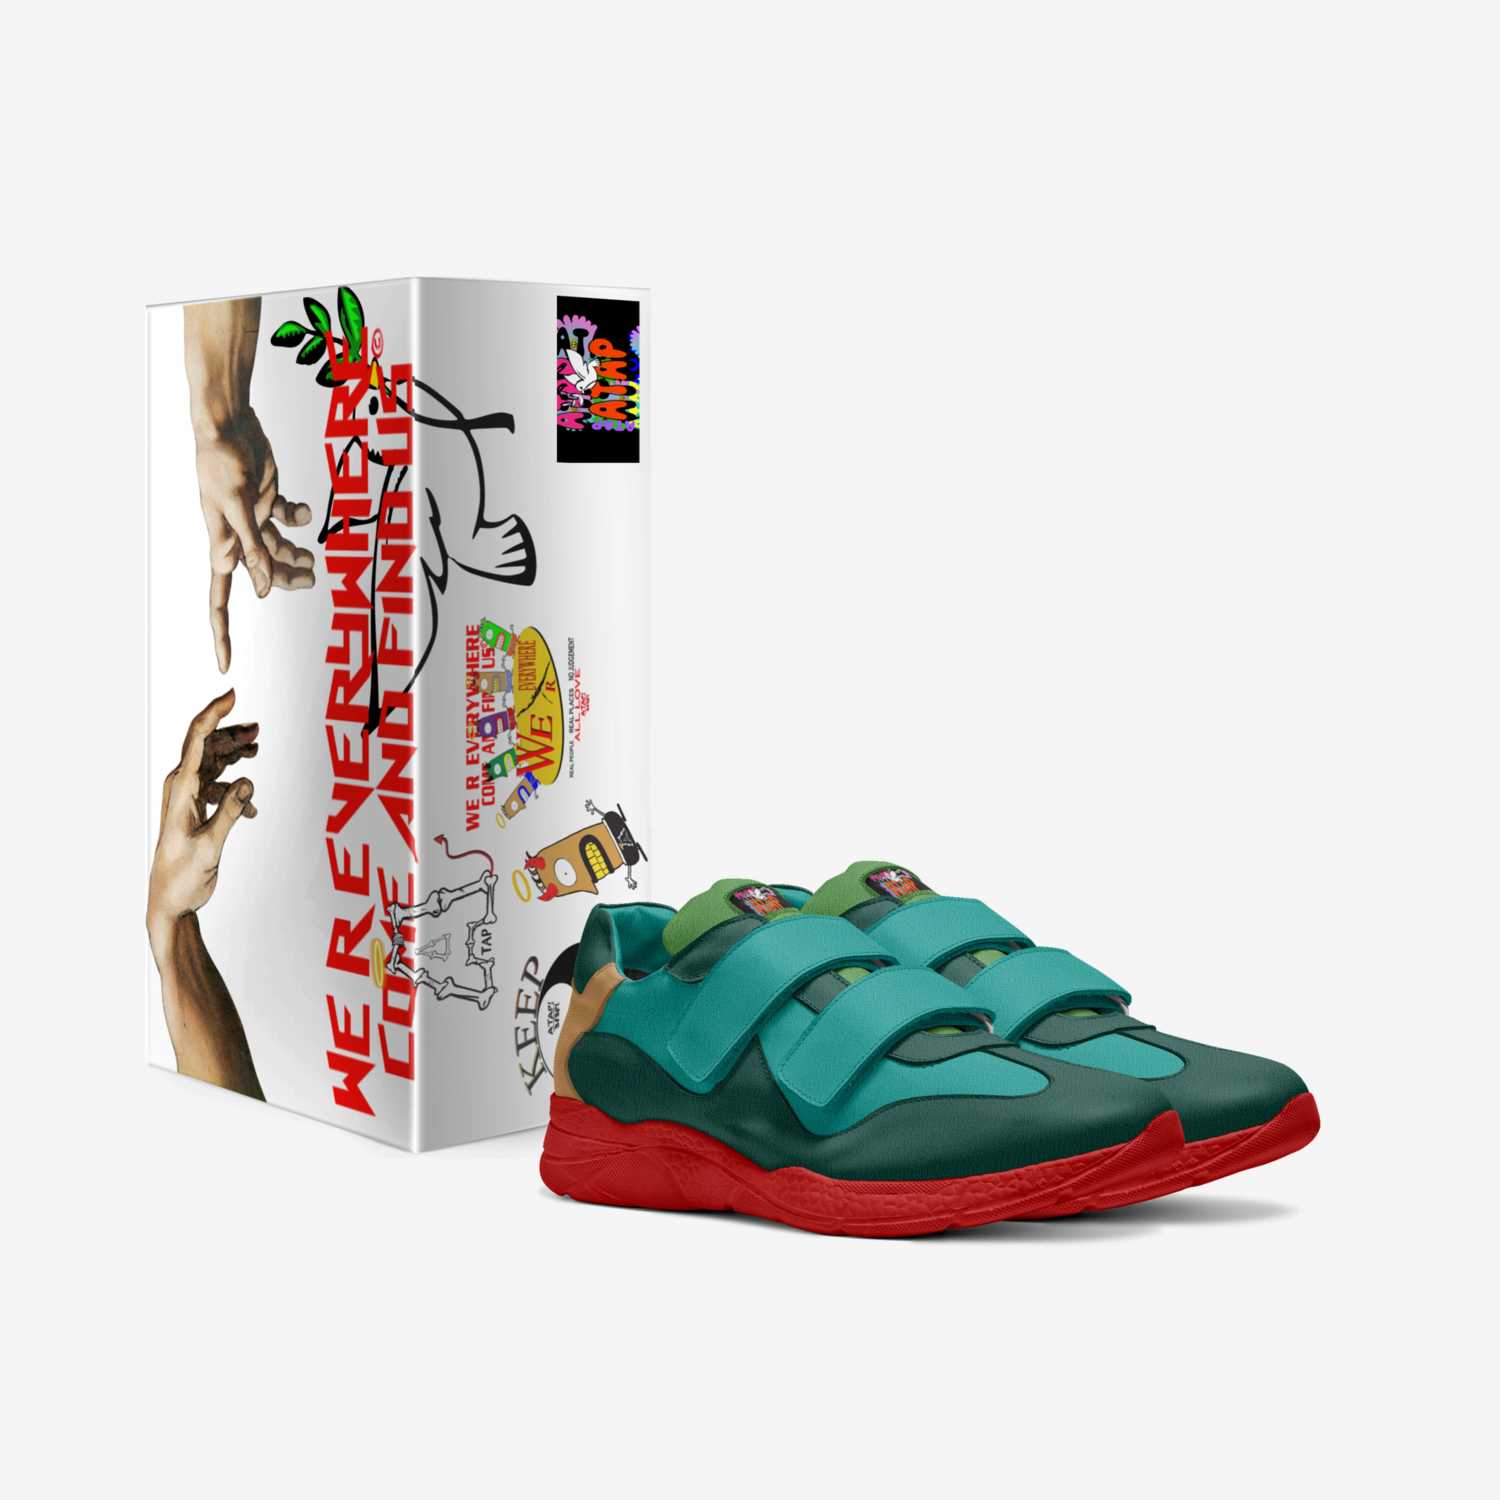 "ATAP FEETS 1" custom made in Italy shoes by Juwan Randolph | Box view